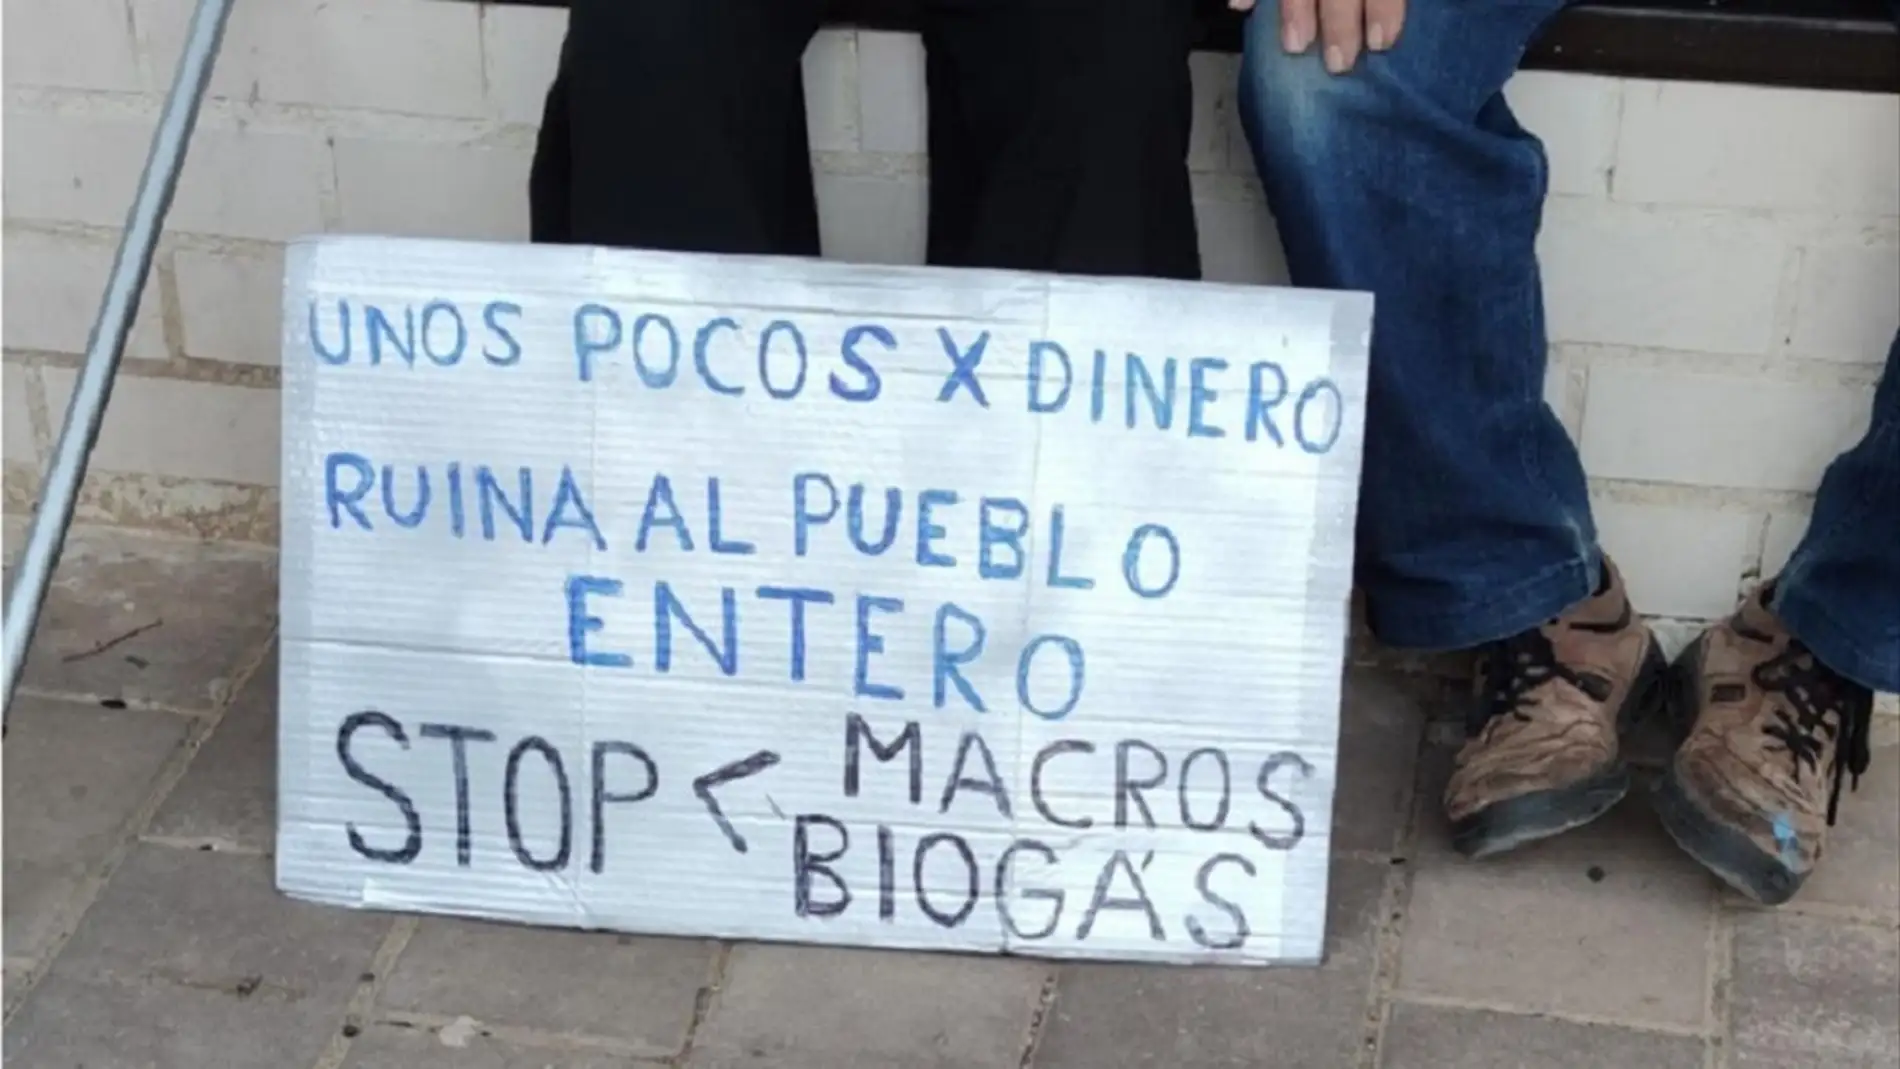 Cenizate vuelve a salir a la calle para protestar contra la macrogranja y la planta de biogas